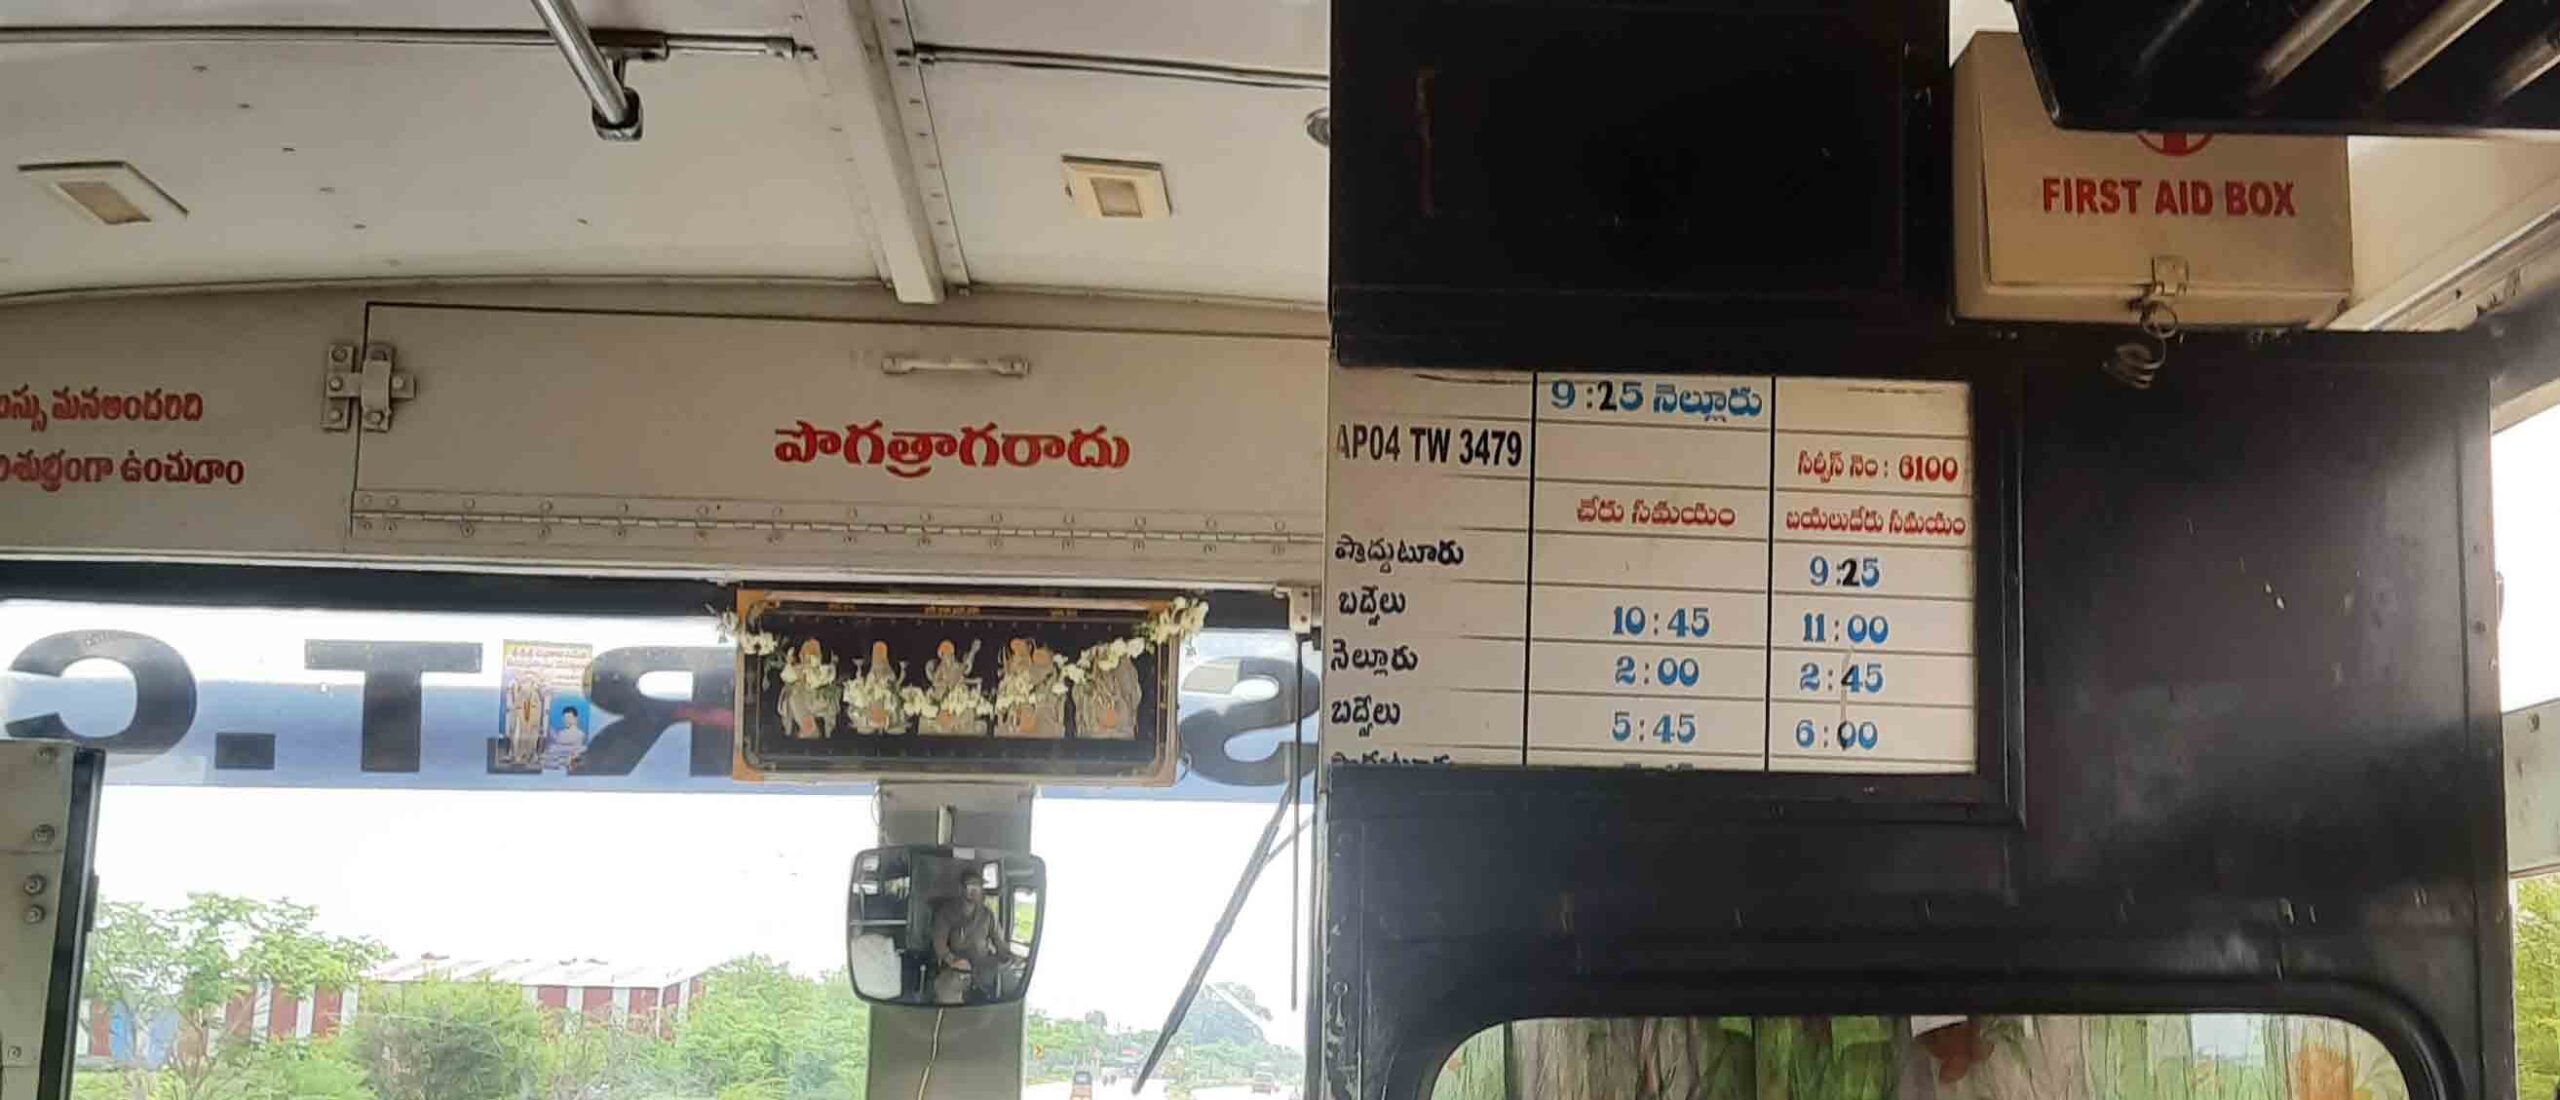 Proddatur-to-Nellore-Bus-Timings